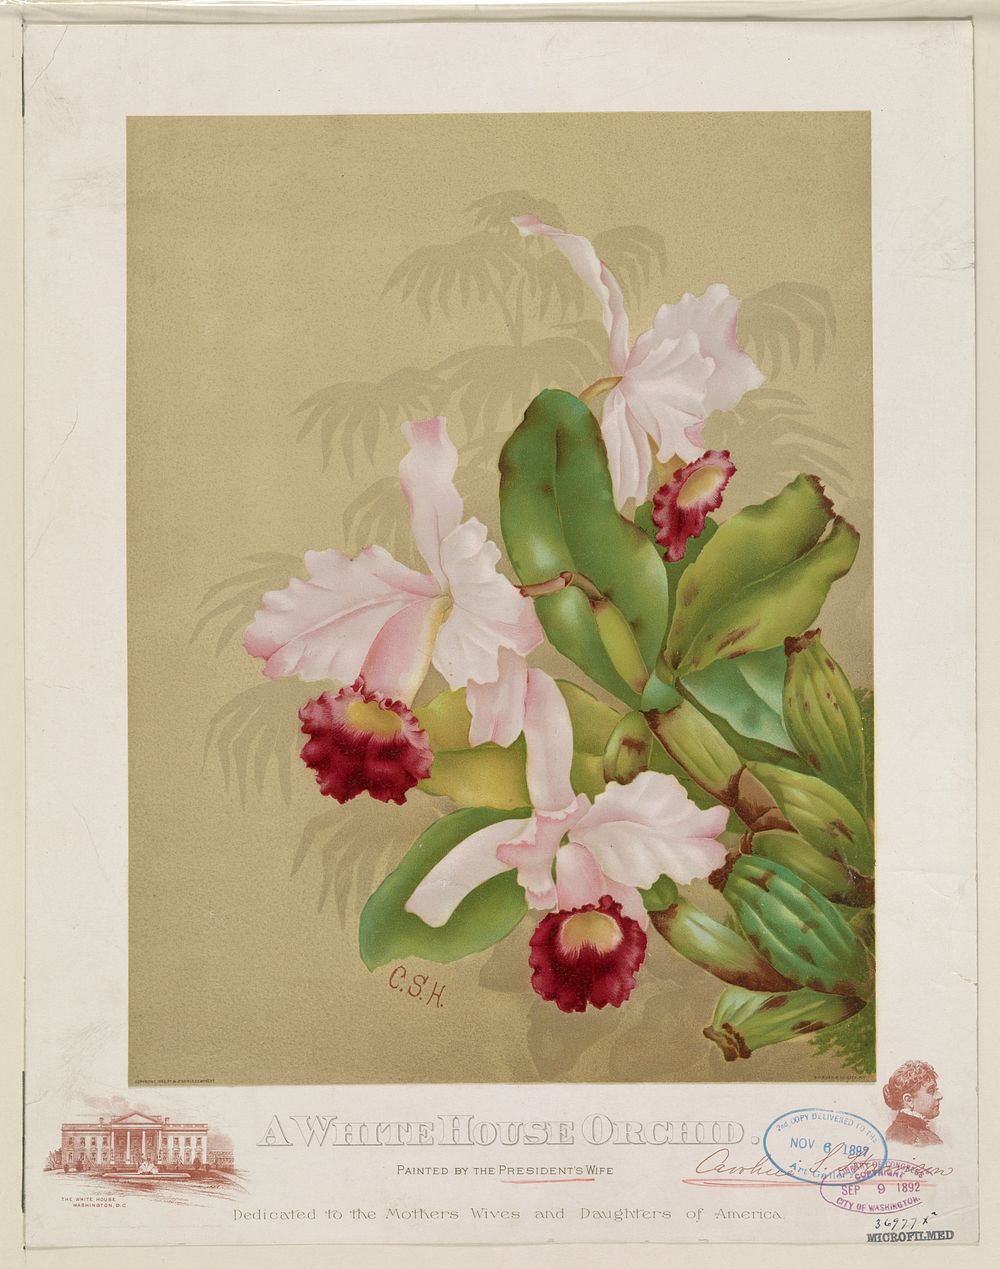 A whitehouse orchid, G.H. Buek & Co., c1892 September 9.